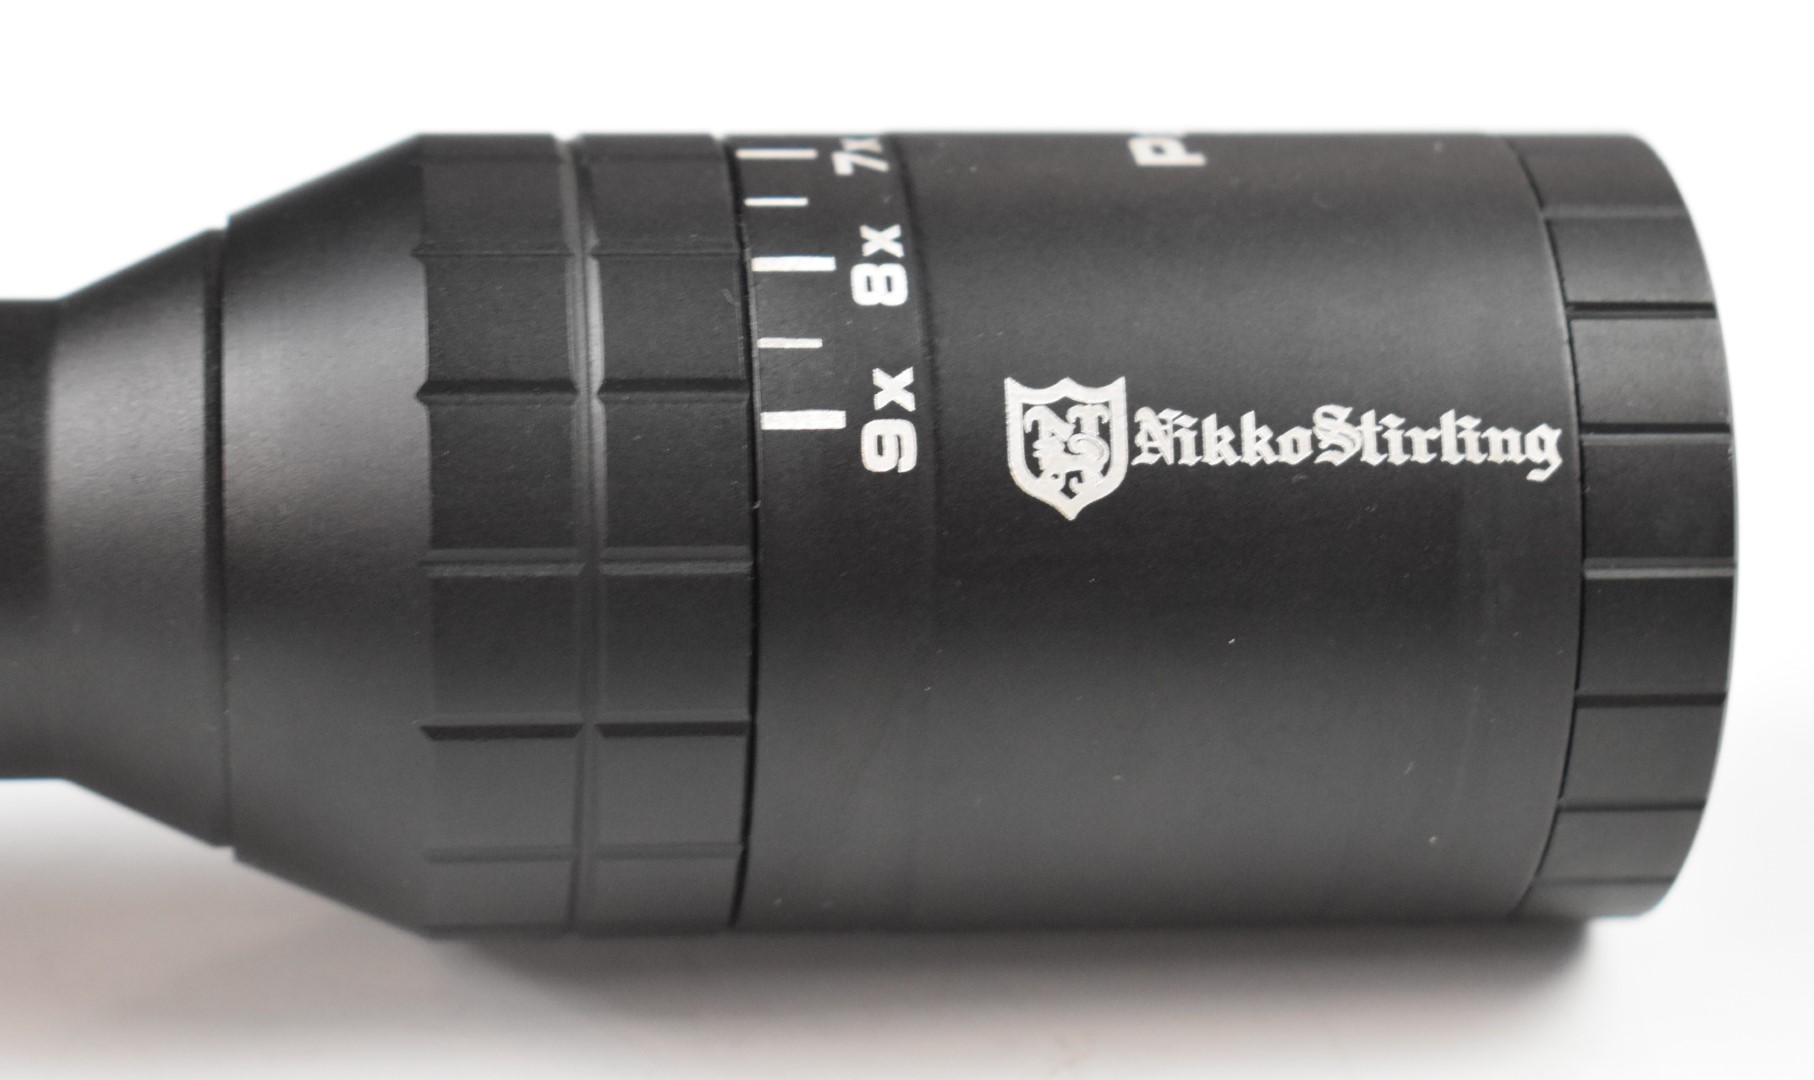 Nikko Stirling Panamax 3-9x50 half mil dot air rifle or similar scope, in original box - Image 5 of 9